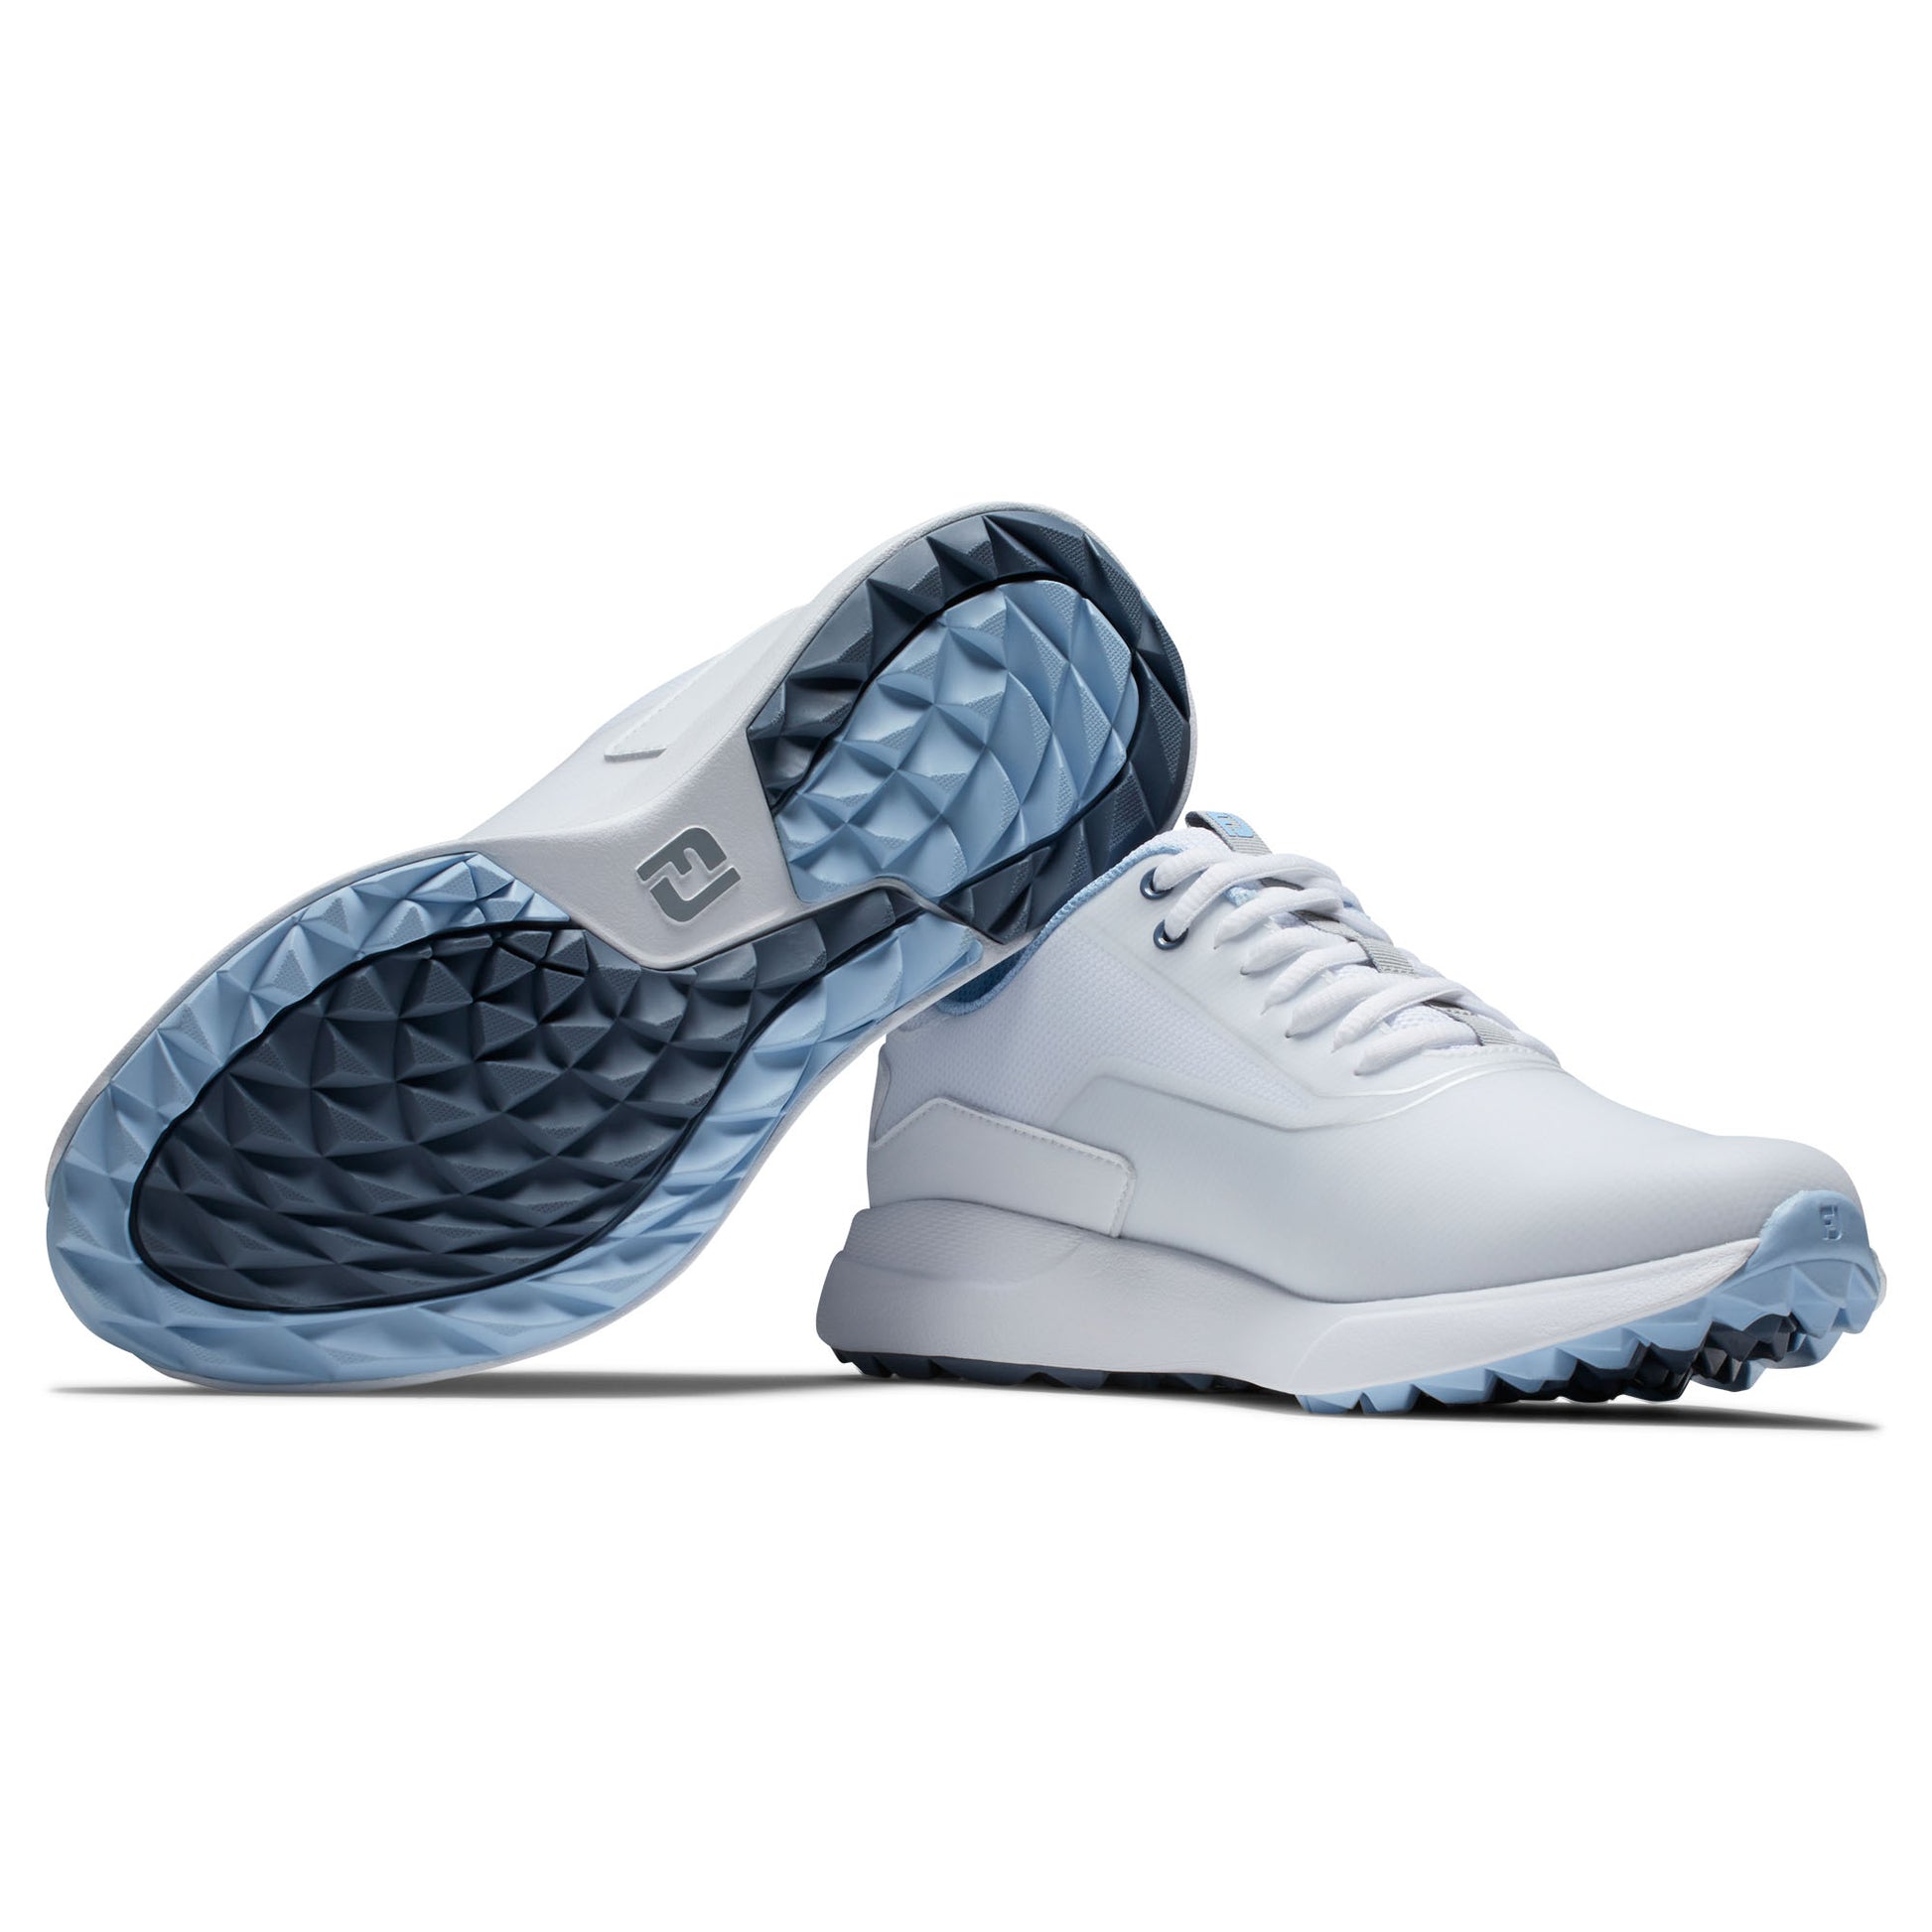 FootJoy Ladies Performa Spikeless Waterproof Golf Shoes in White & Blue